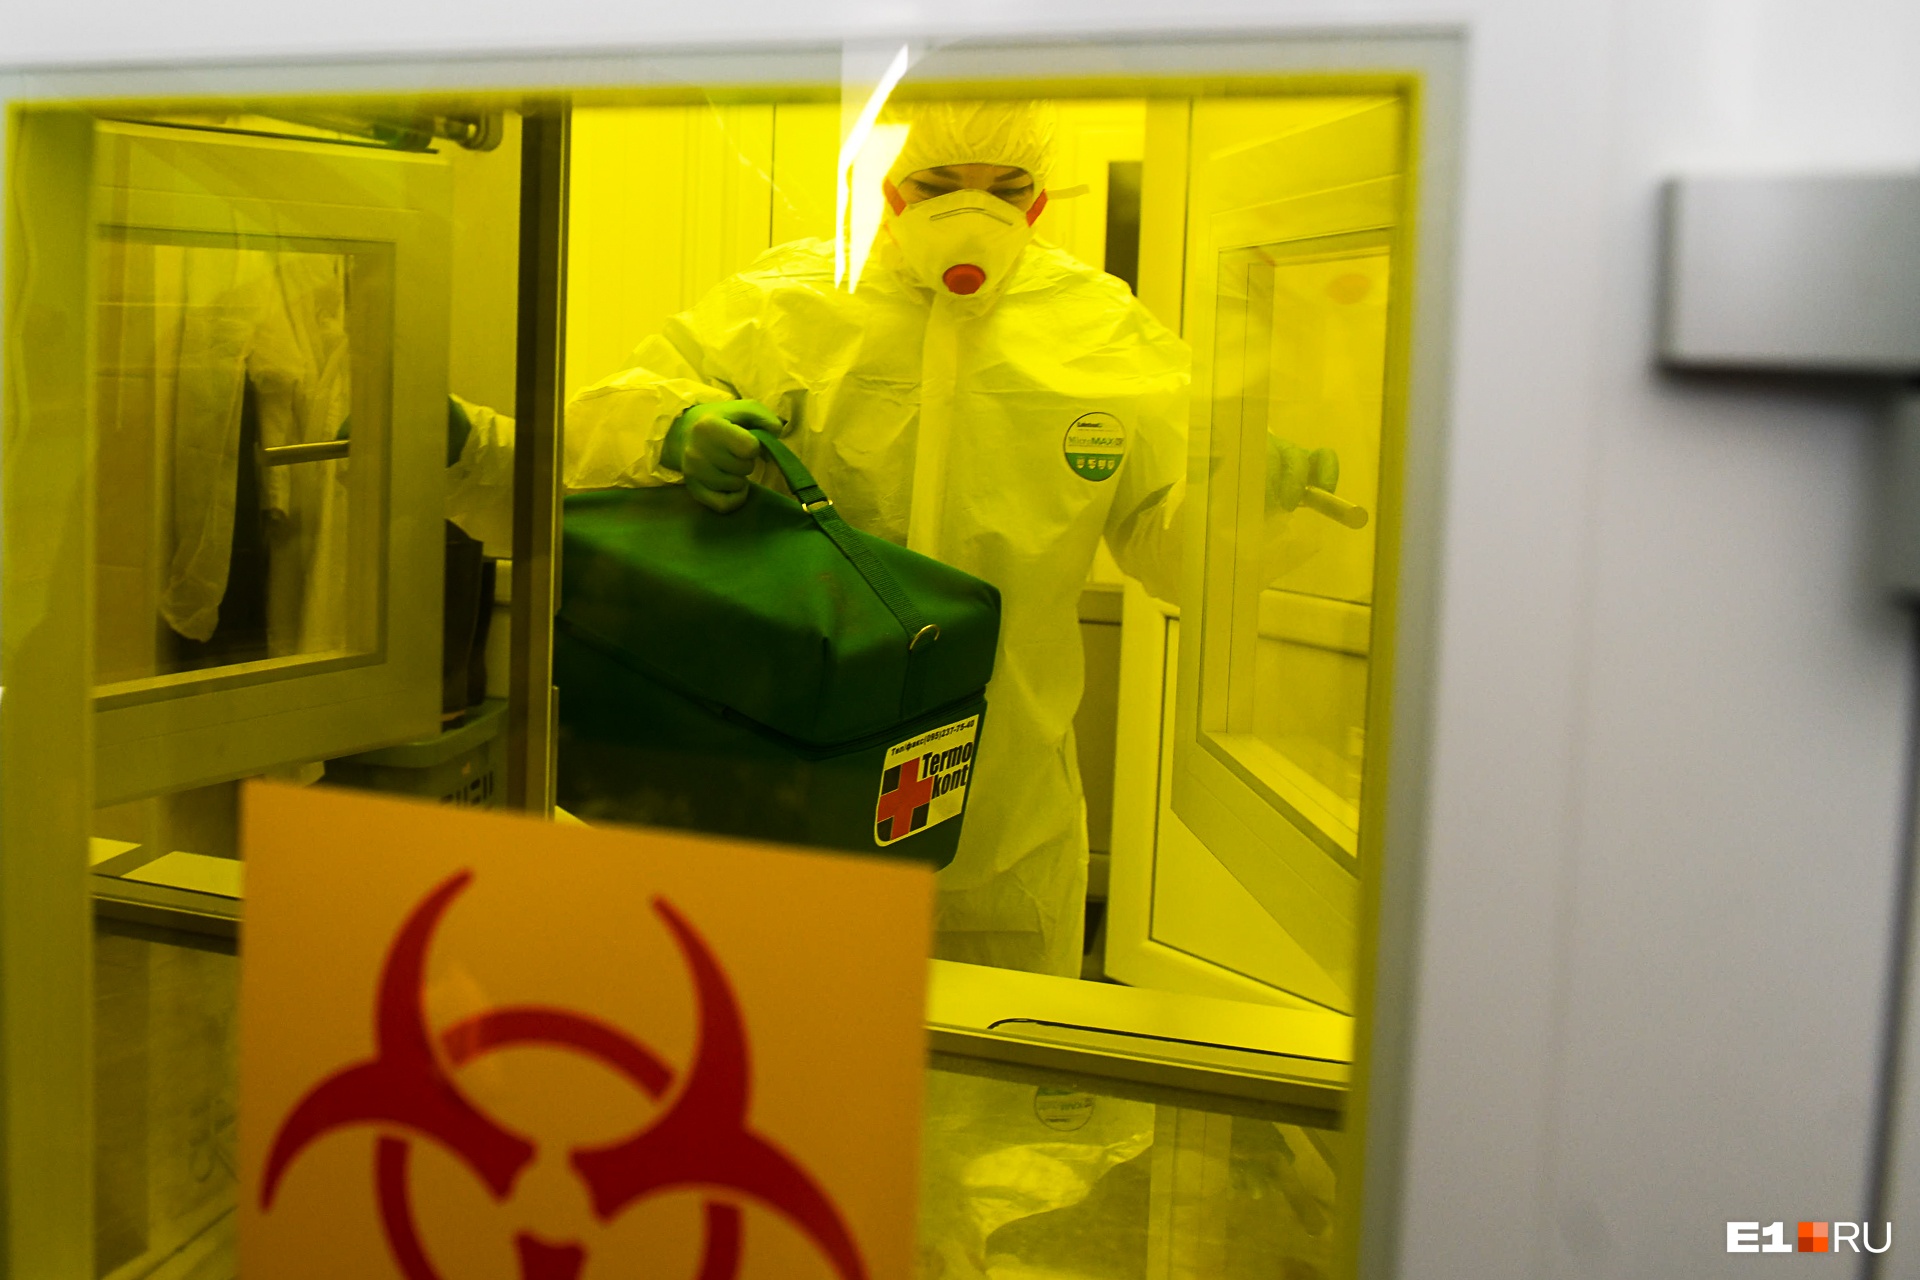 Жителям Алапаевска сообщили о врачах, заразивших коронавирусом 300 человек: выясняем, правда ли это